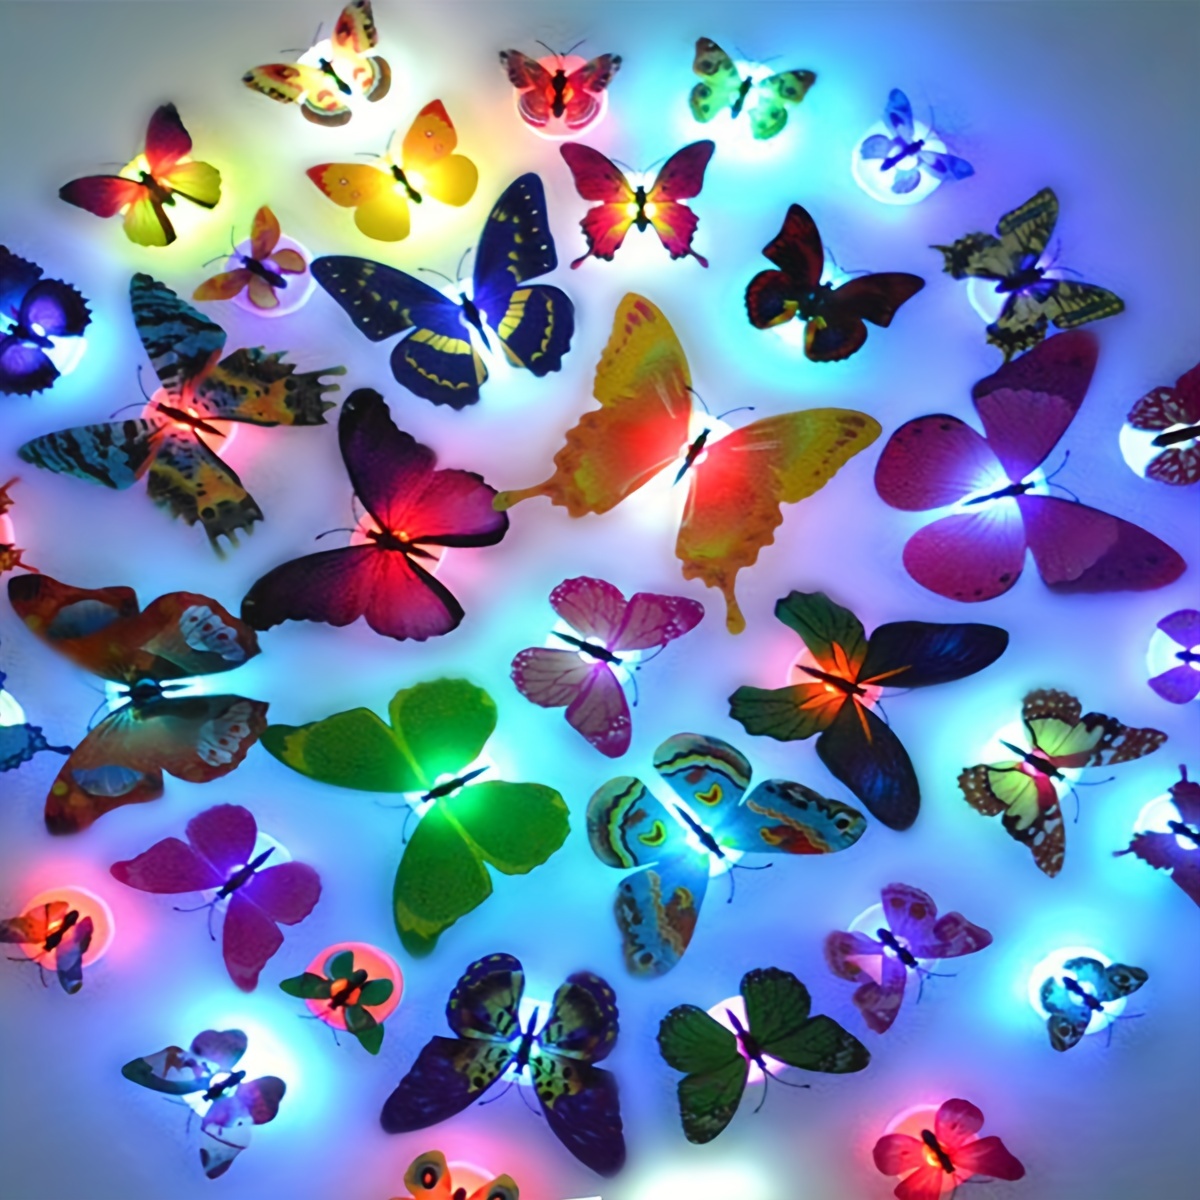 3 mariposas voladoras alimentadas por energía solar/batería. Mariposas  Voladoras Decoran El Paisaje Del Jardín Y Del Patio (colores aleatorios).